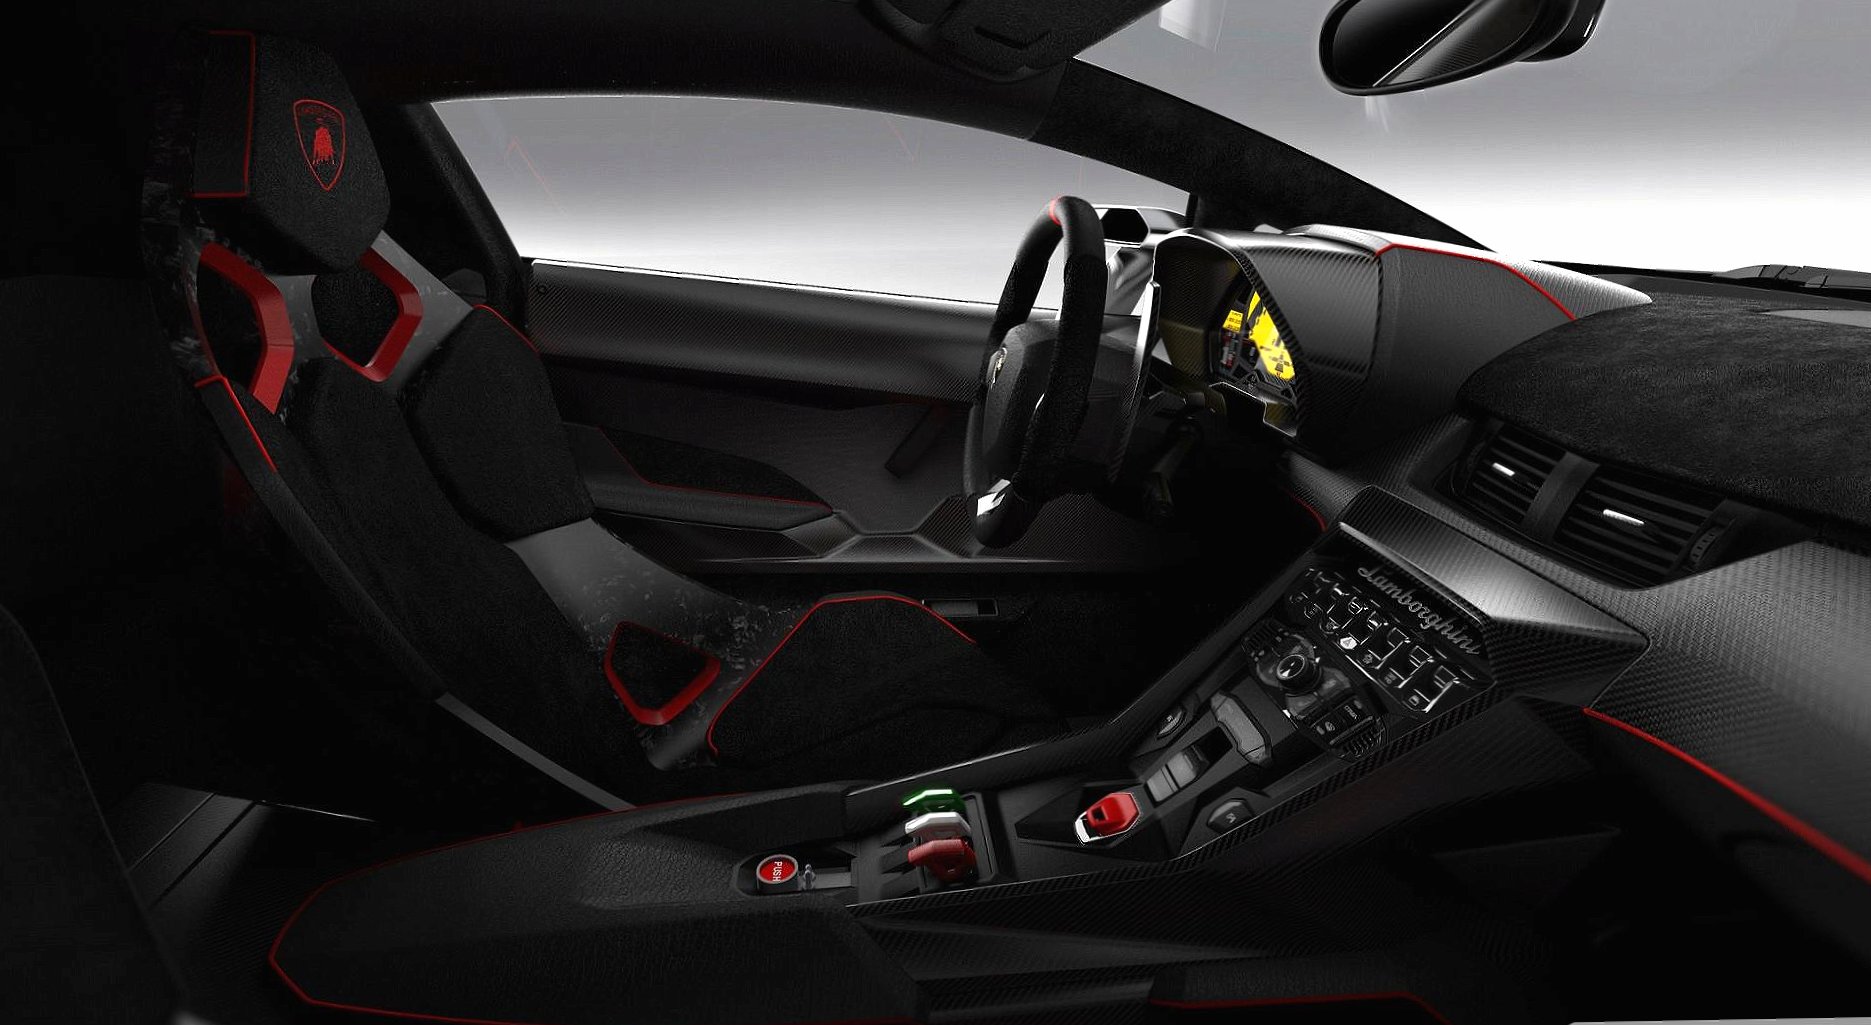 Lamborghini veneno interior at 1280 x 960 size wallpapers HD quality